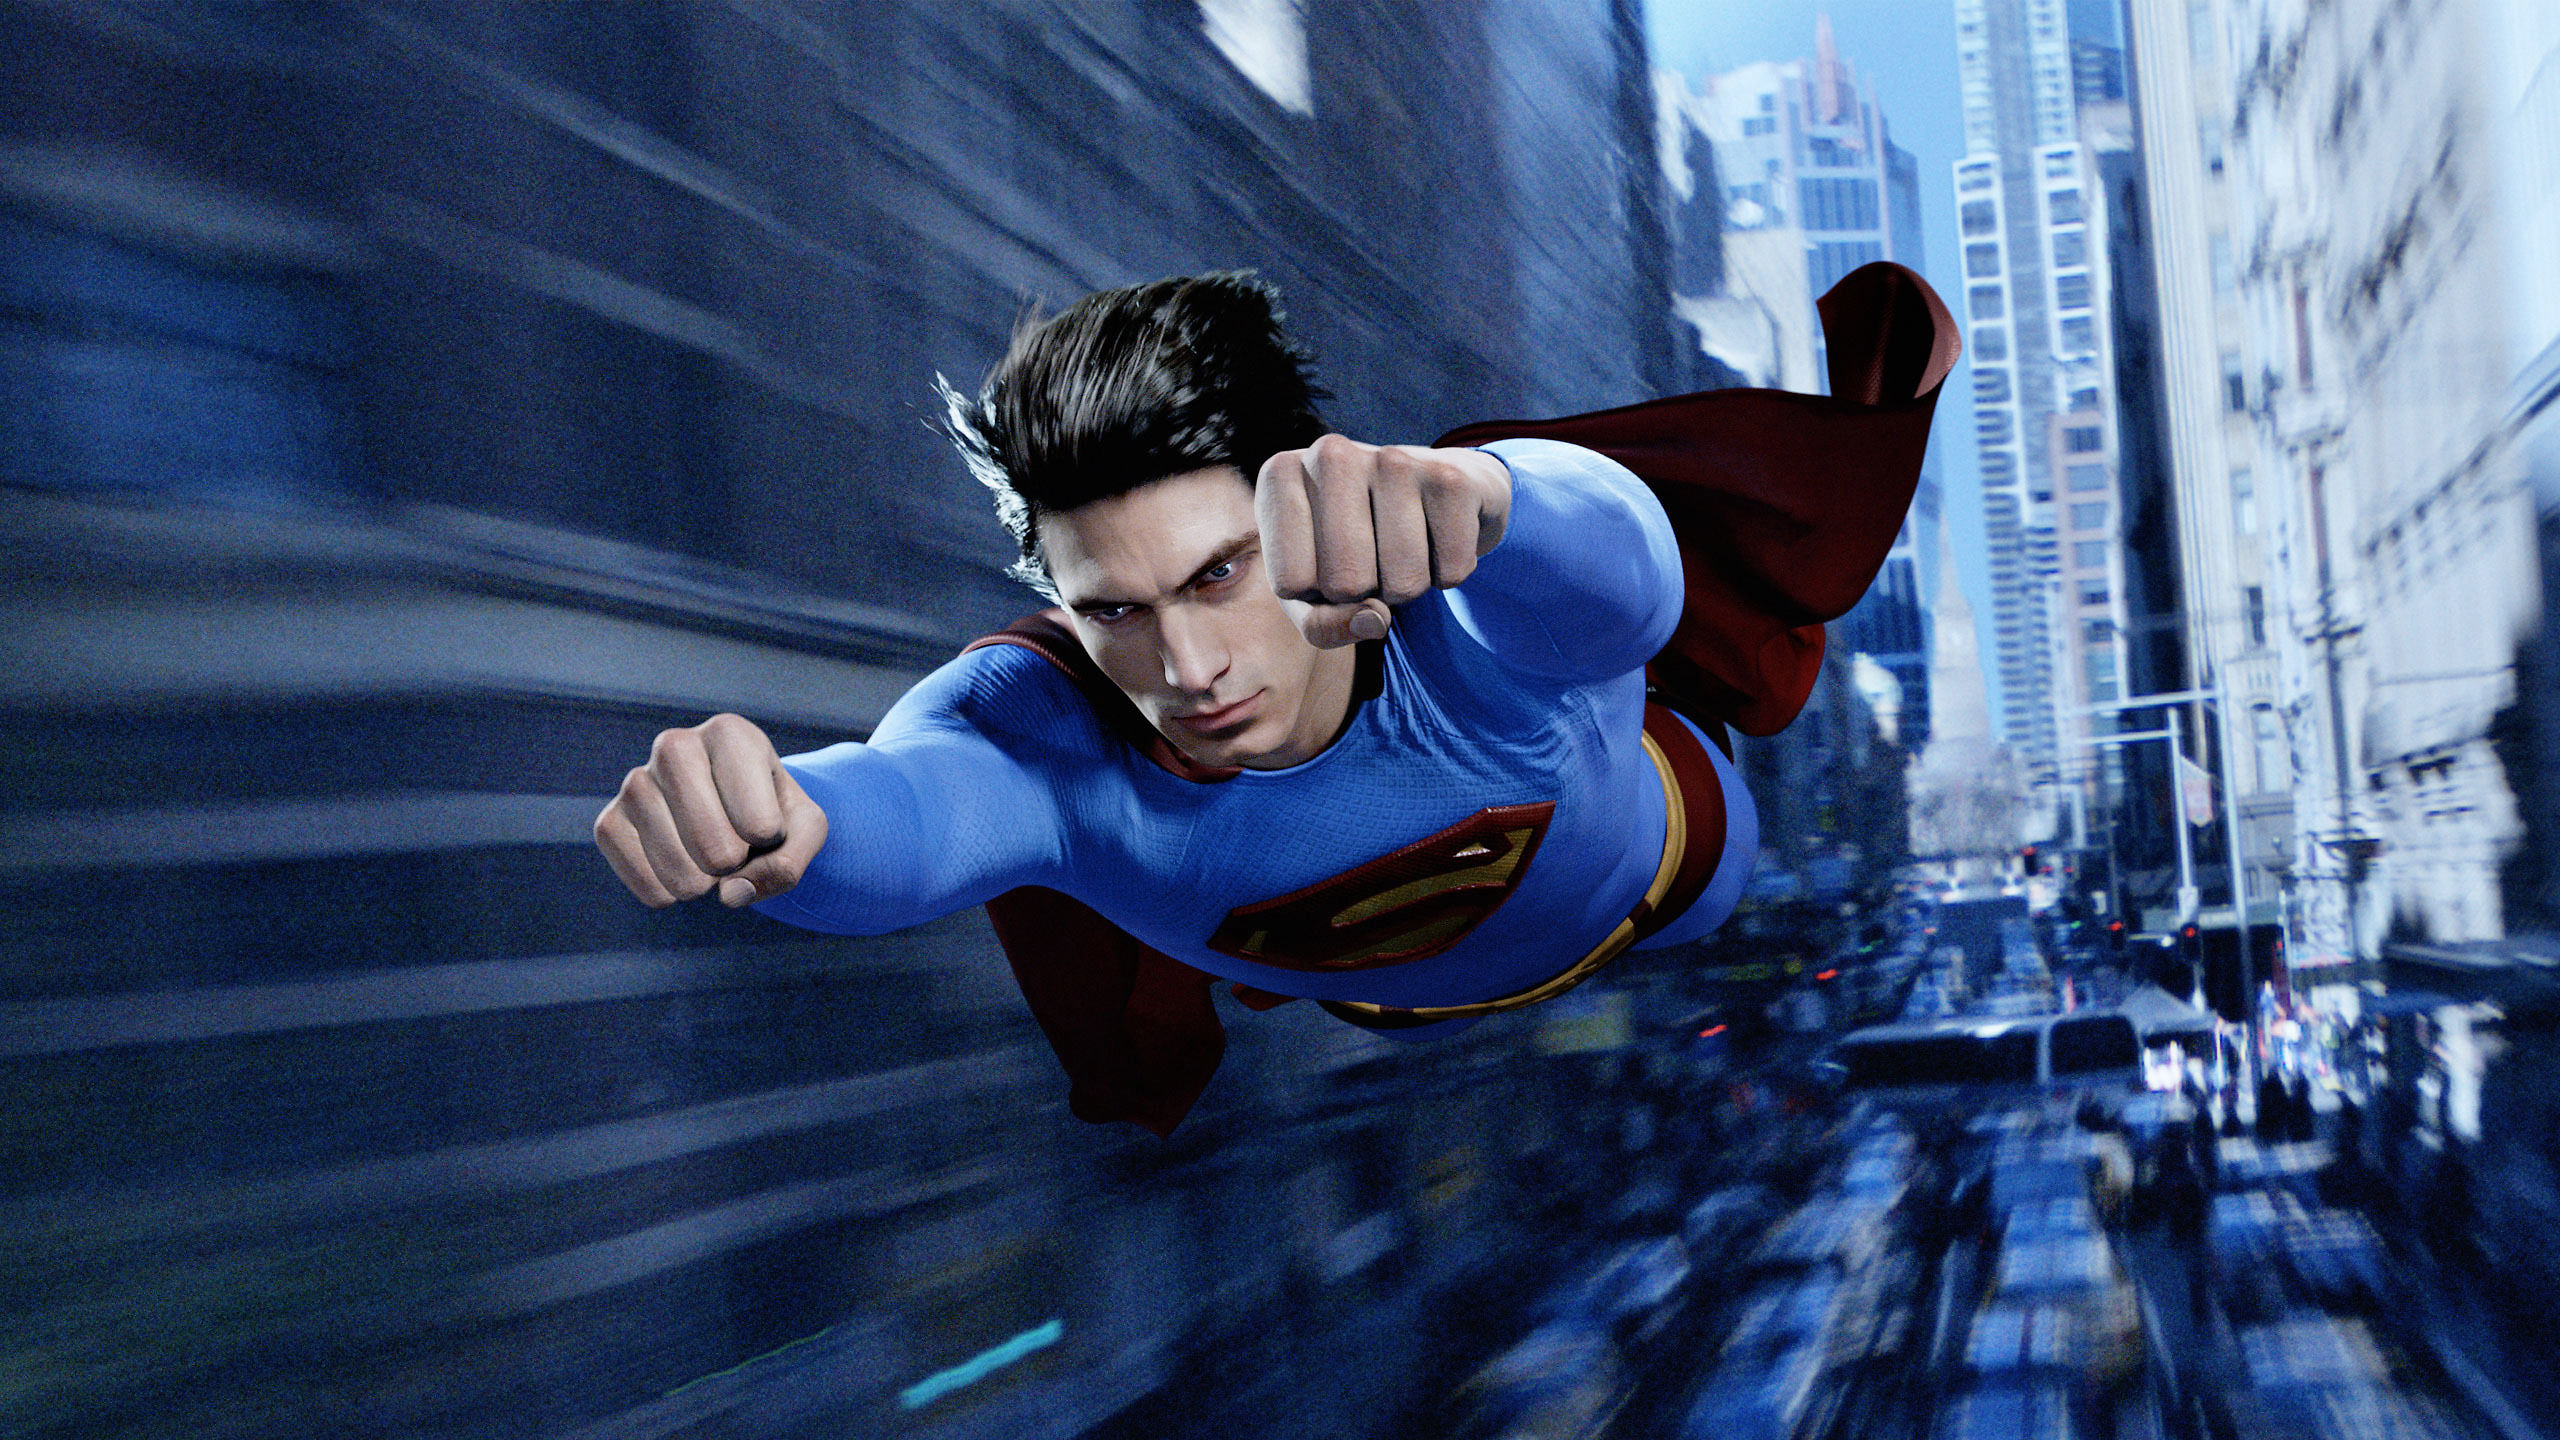 superman hd wallpaper,übermensch,erfundener charakter,superheld,gerechtigkeitsliga,straßentanz